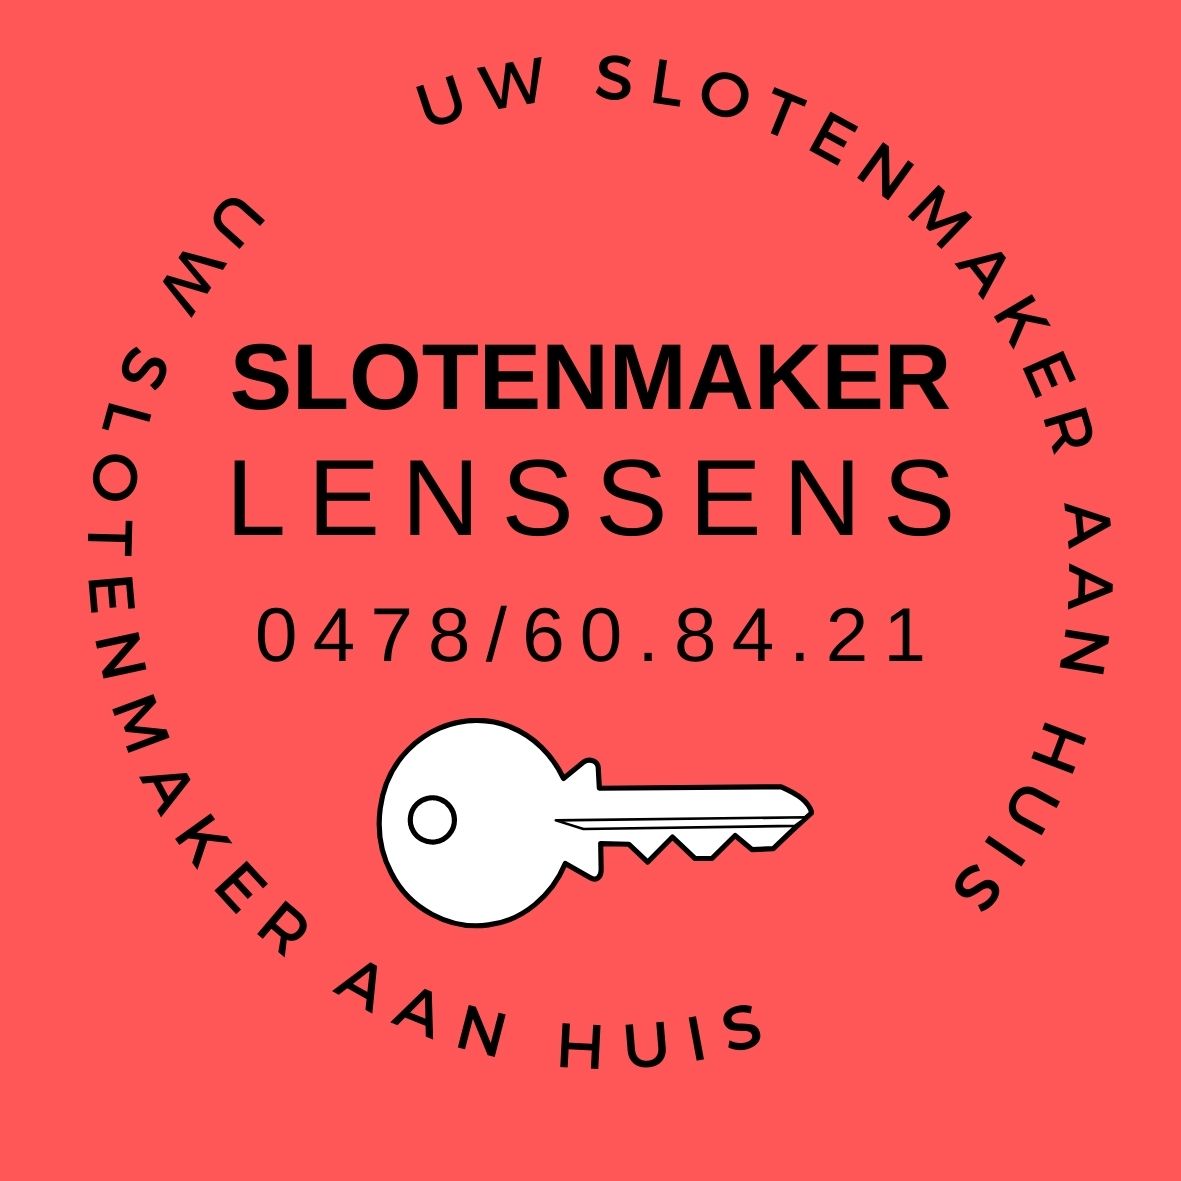 slotenmakers Sint-Pieters-Woluwe Slotenmaker Lenssens